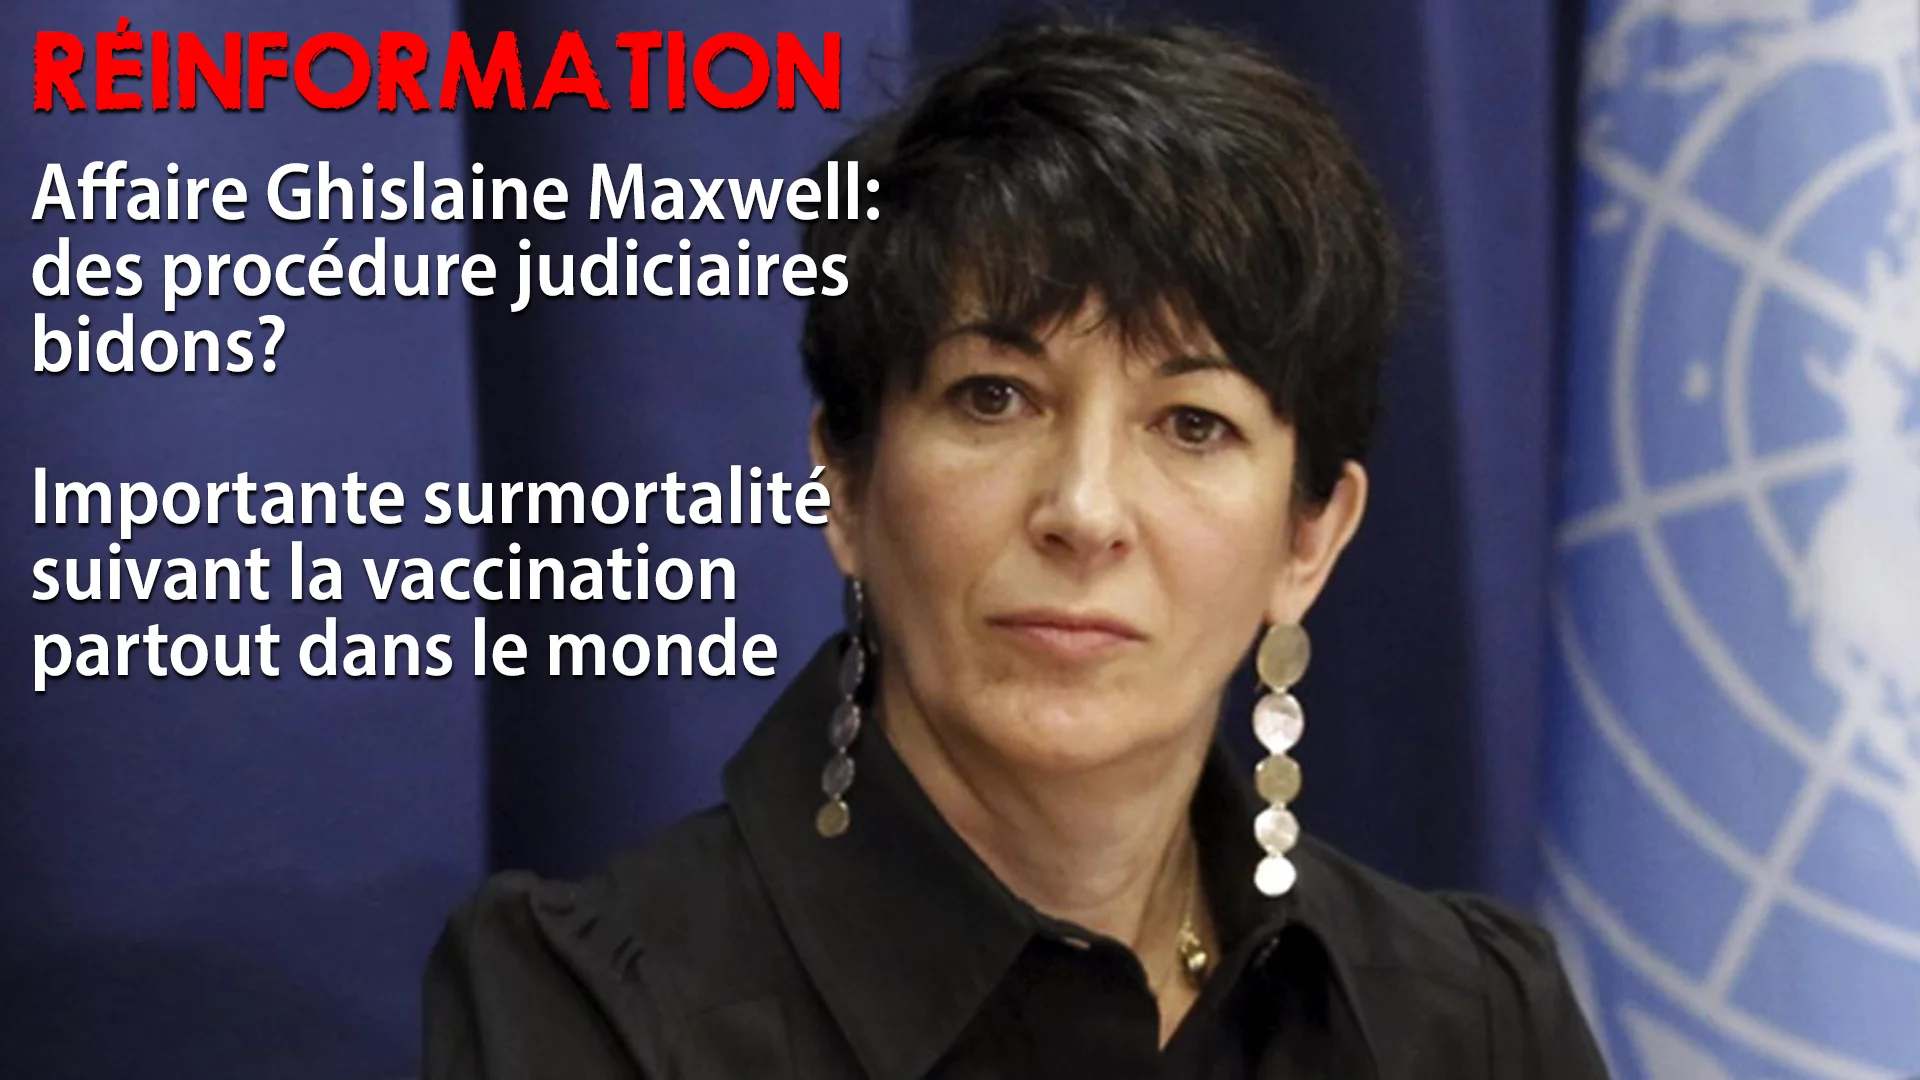 RÉINFORMATION – AFFAIRE GHISLAINE MAXWELL: DES PROCÉDURES JUDICIAIRES BIDONS?